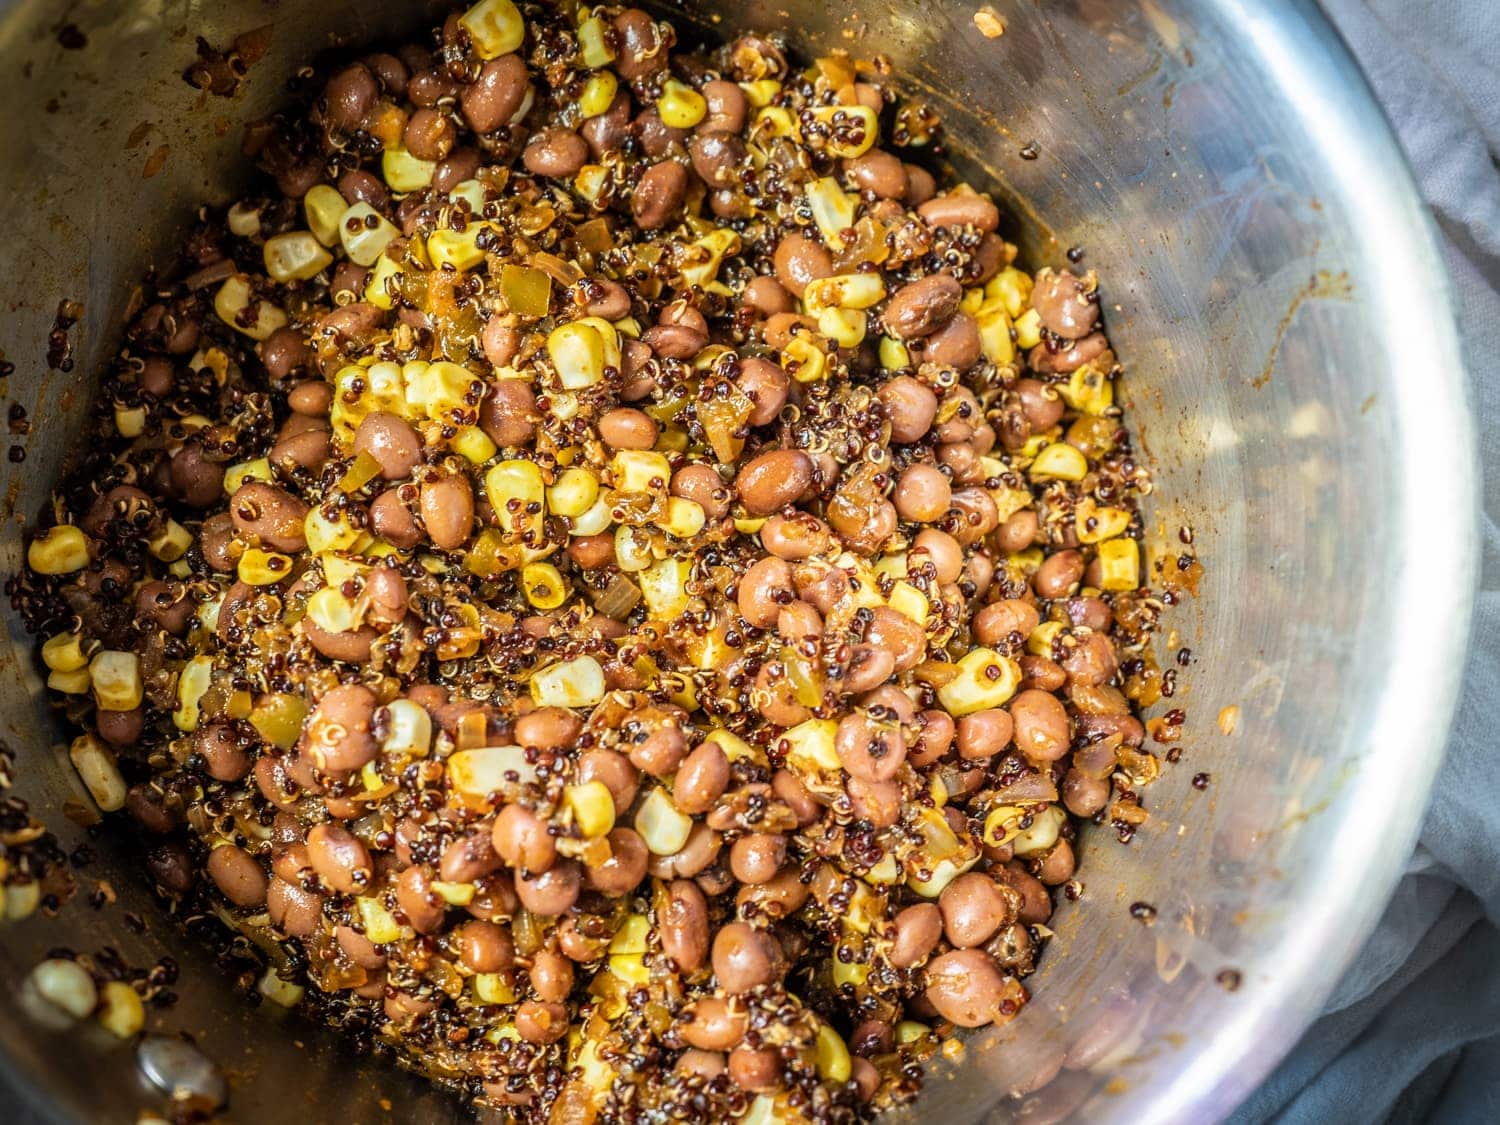 Bean, corn, and quinoa mix.